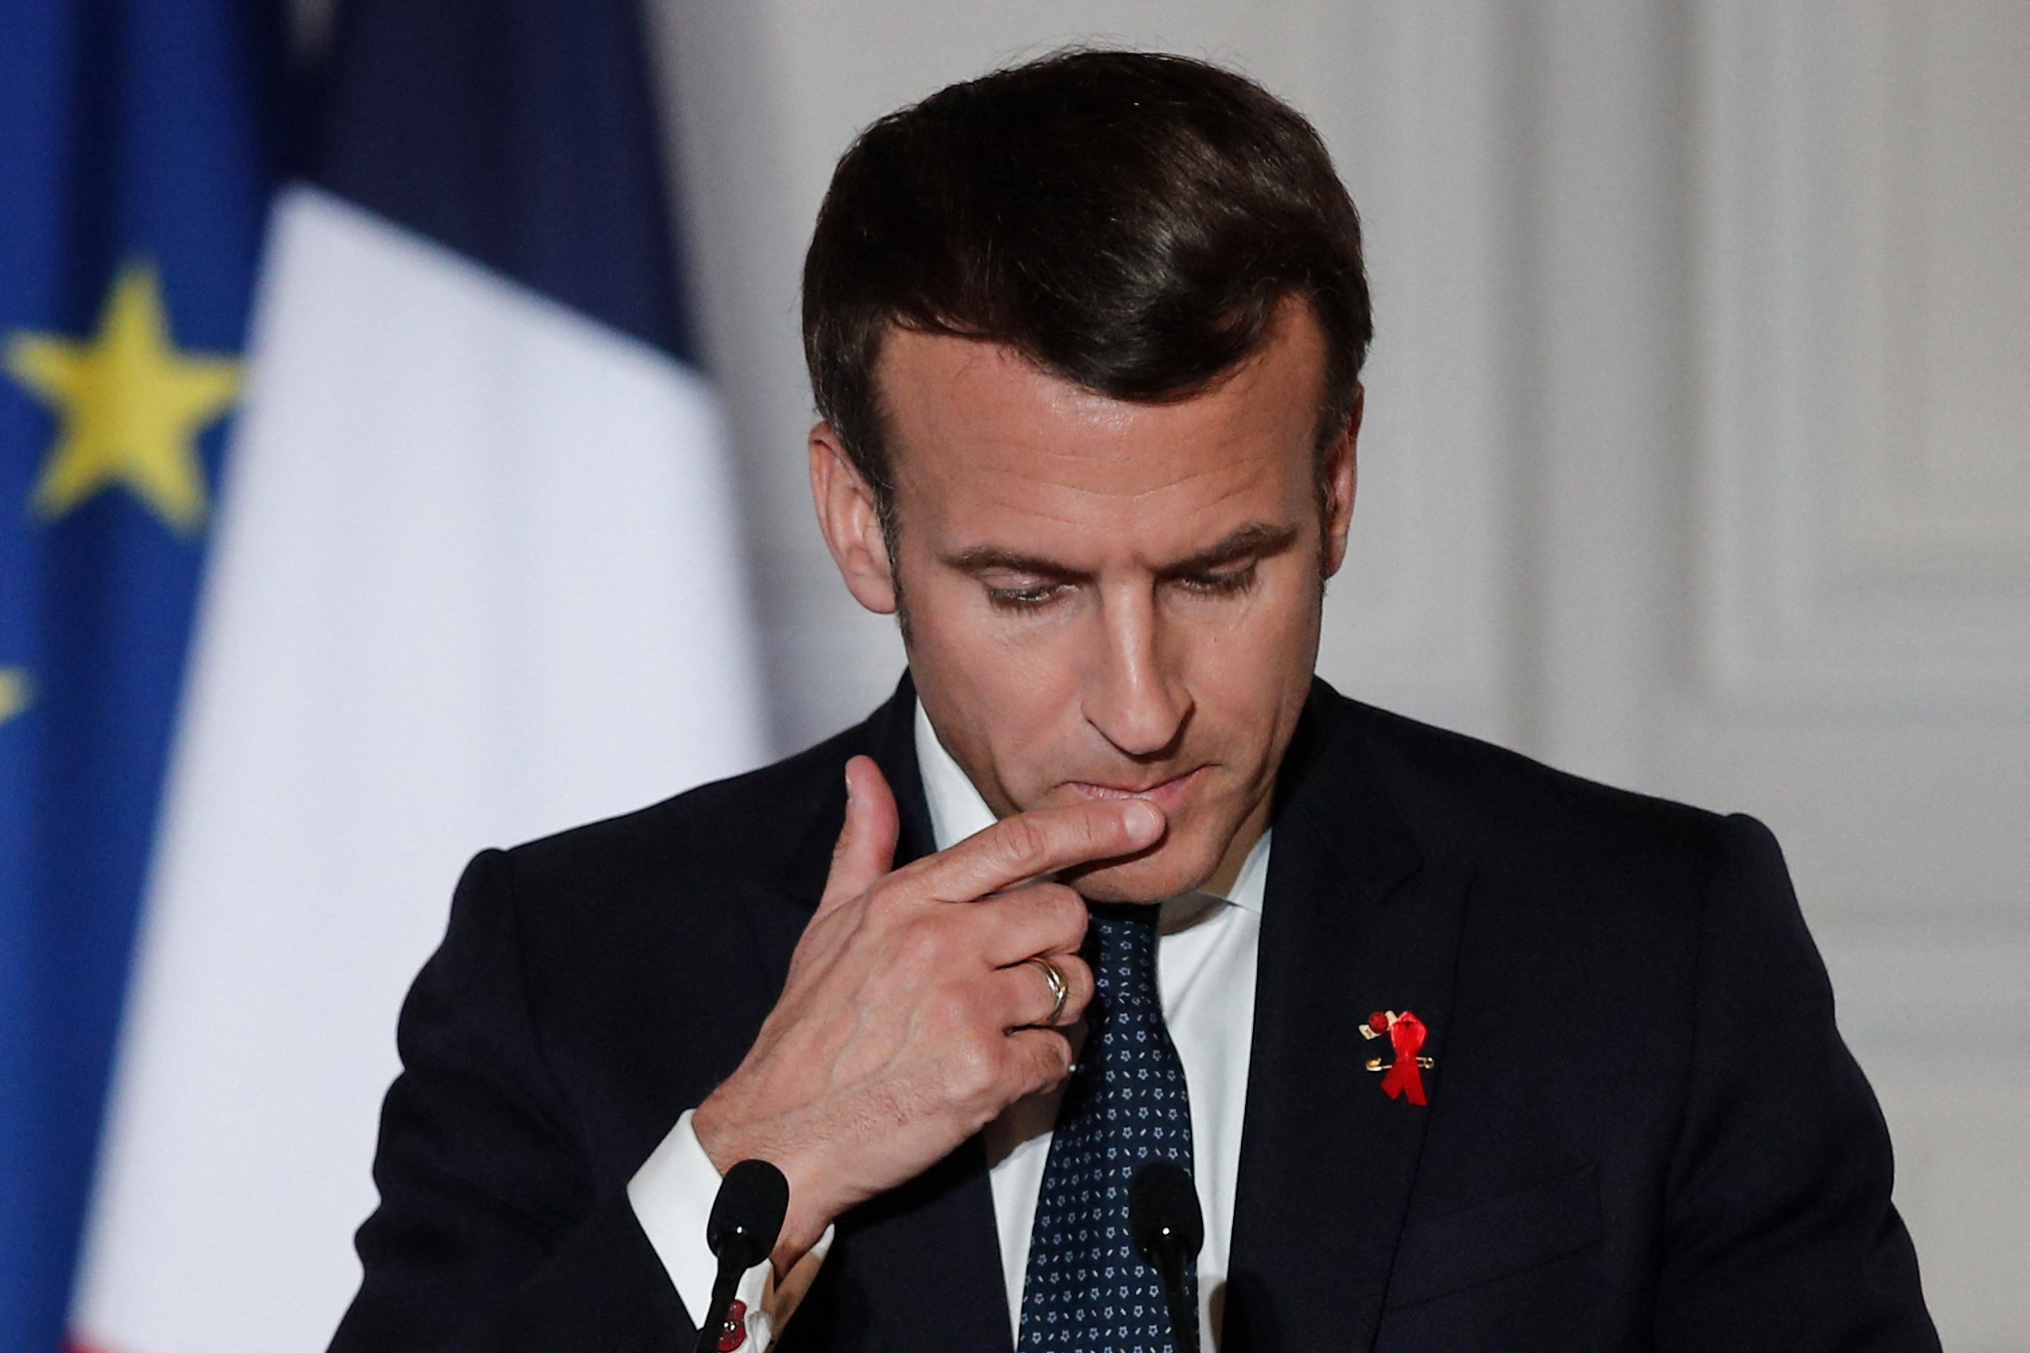 Covid-19: Malgré les appels, Macron n'a pas encore tranché un confinement total